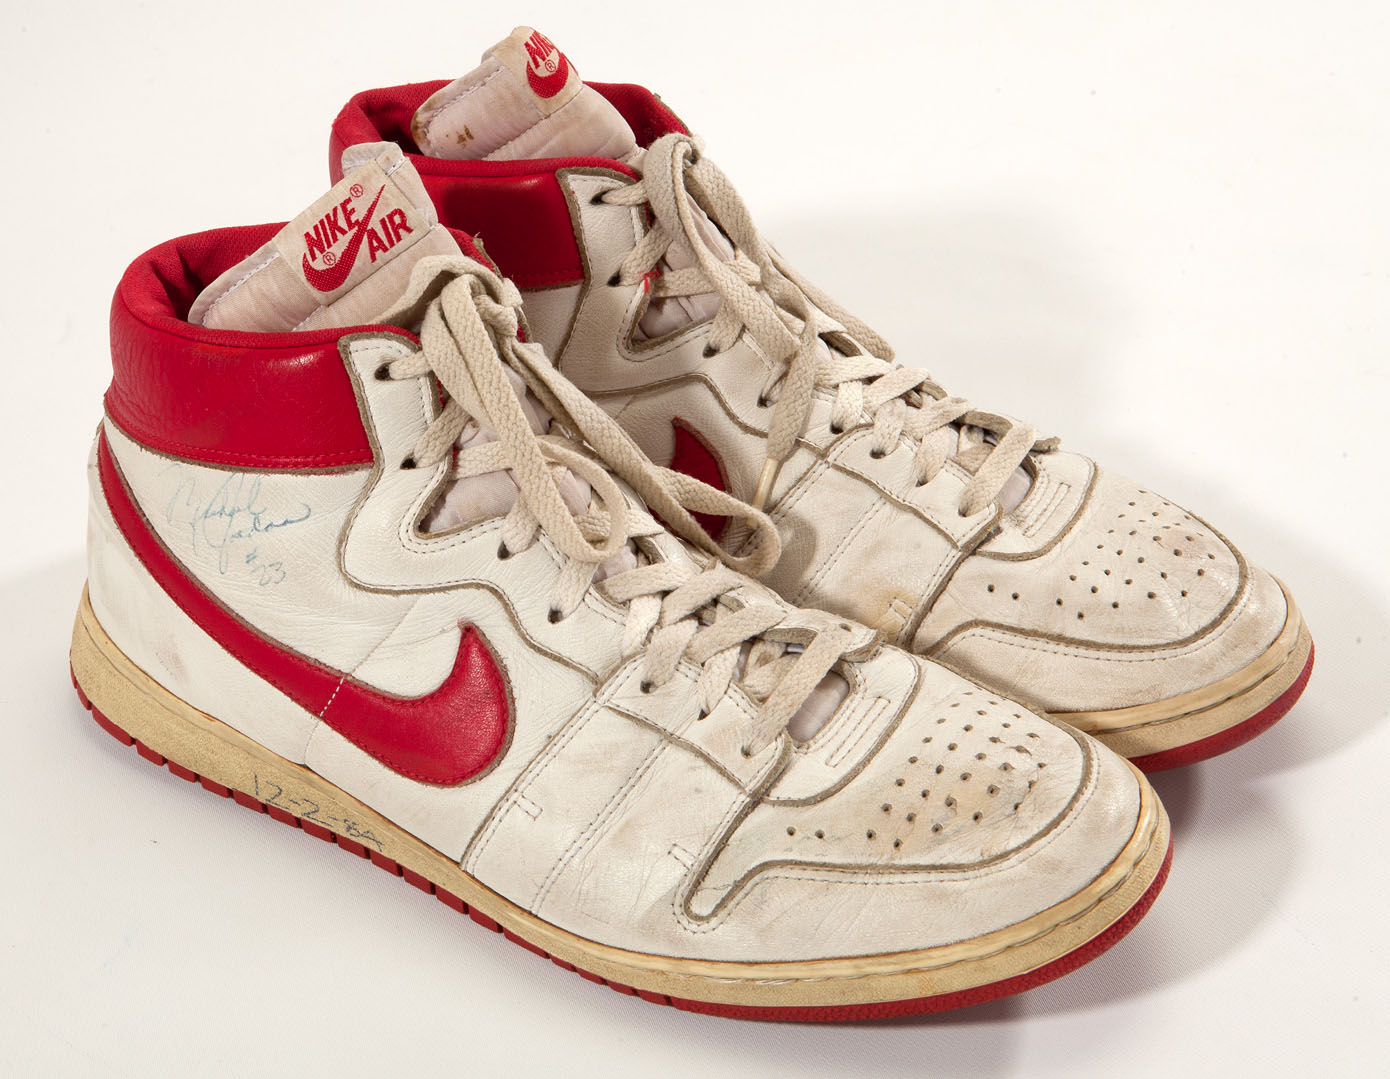 Michael Jordan's Game Worn Nike Air Ship Sneakers Sell For $71,554 ...